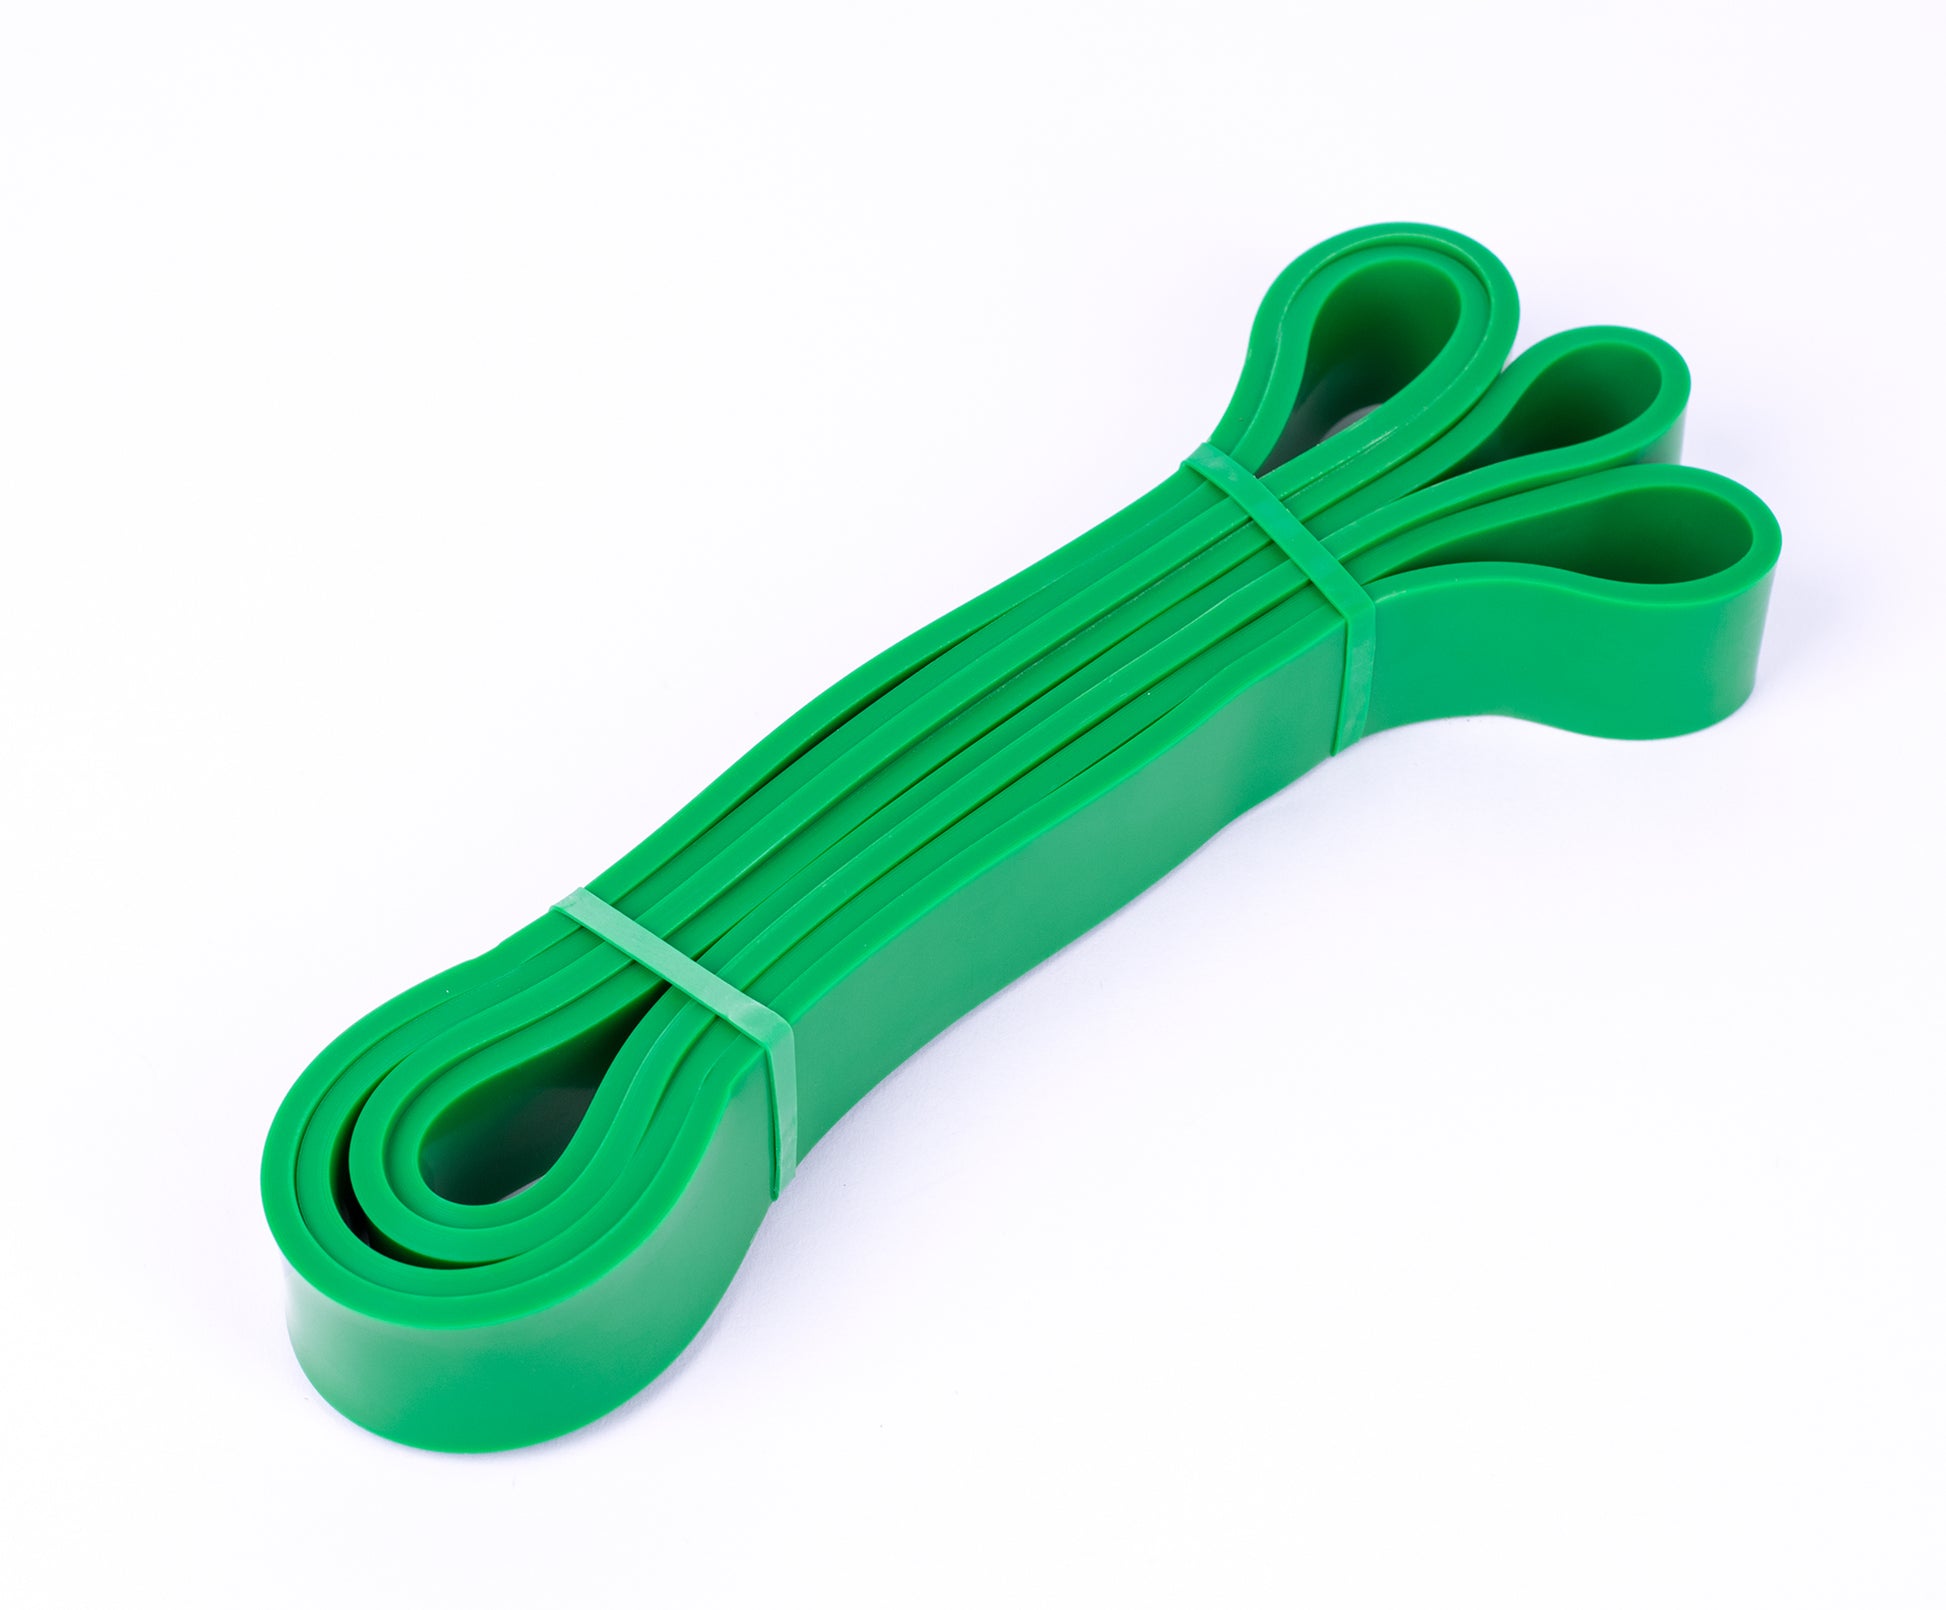 استك و حبل مقاومة مقفول بدون مقبض - باور باند للياقة البدنية - لون اخضر Kanteen - كانتين